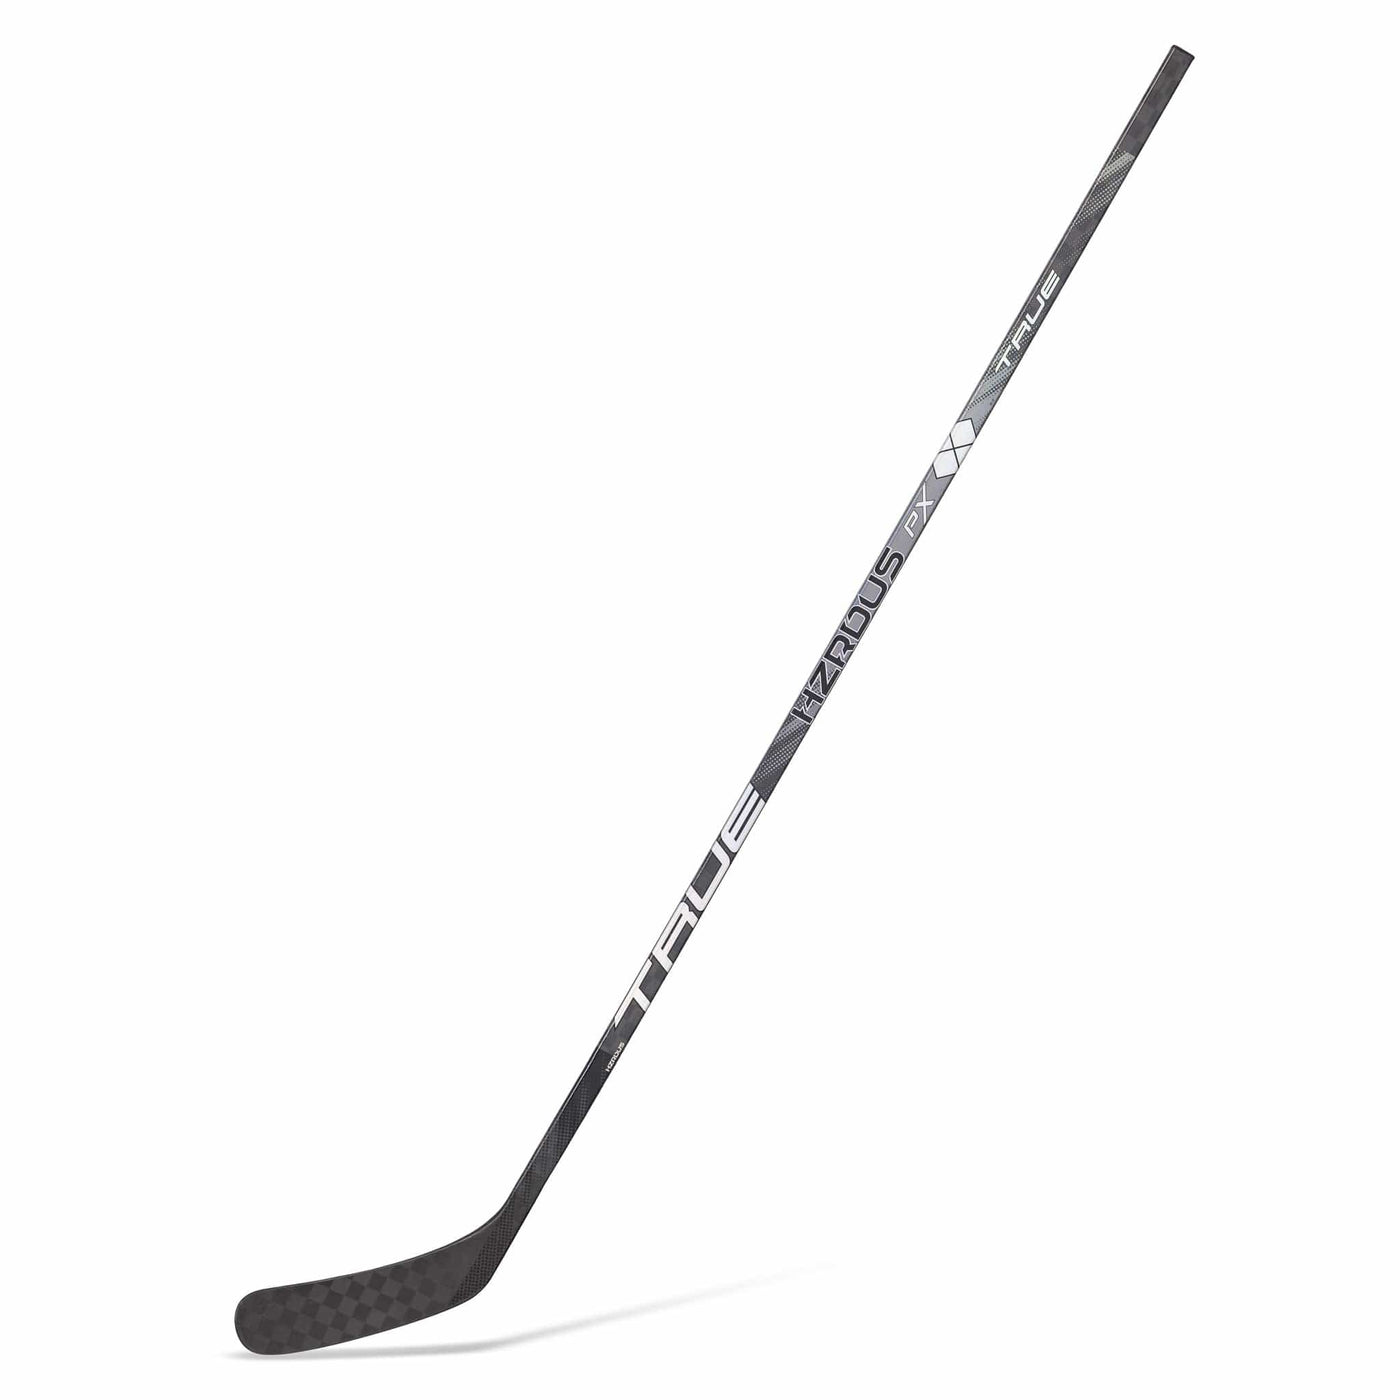 True HZRDUS PX Pro Stock Senior Hockey Stick - Steven Stamkos - TheHockeyShop.com